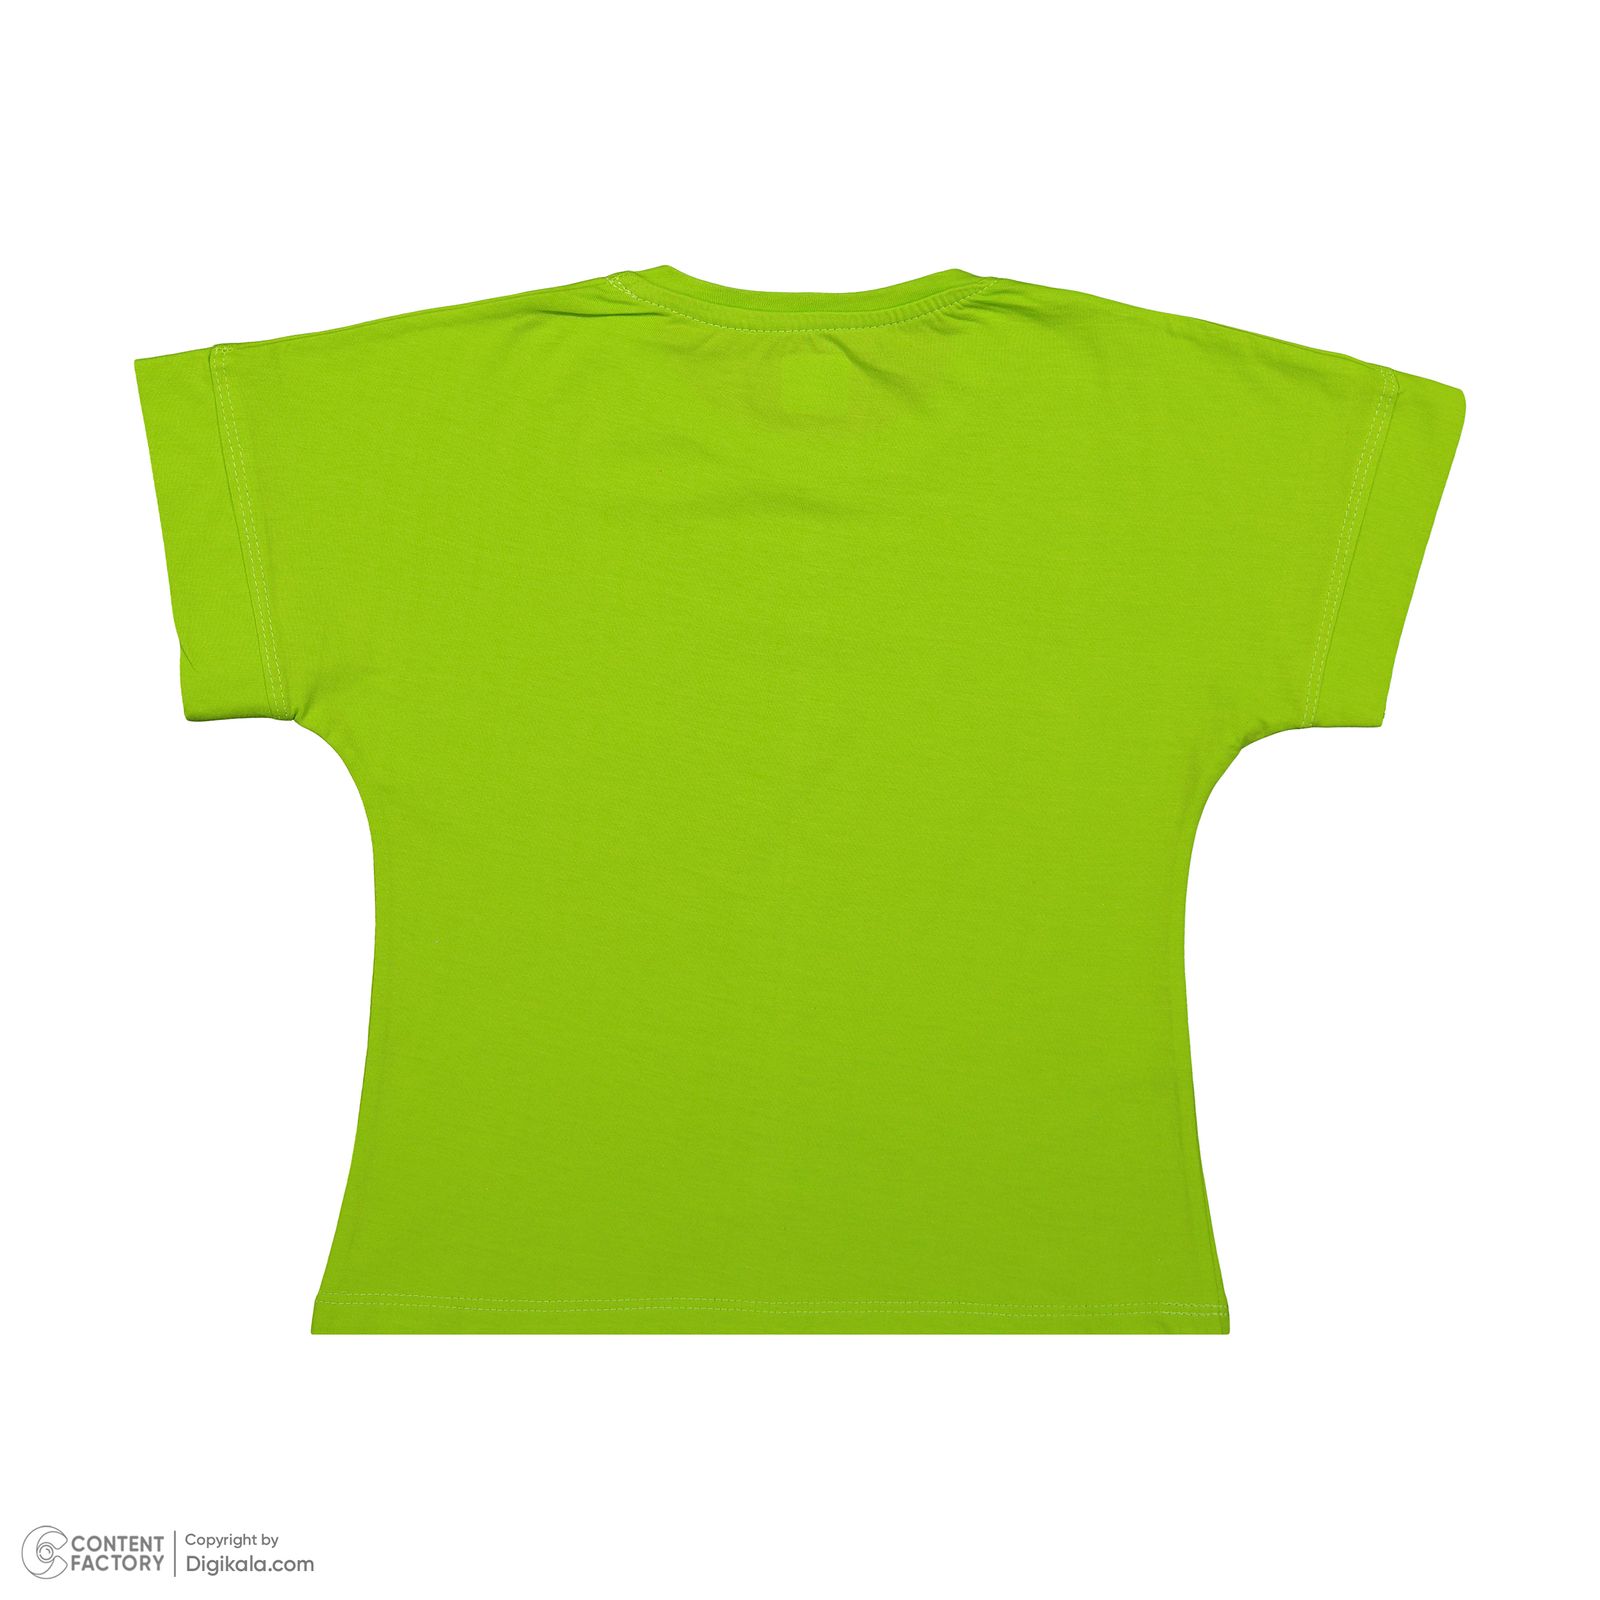 ست تی شرت آستین کوتاه و شلوارک دخترانه مادر مدل گاردن کد 92-43 رنگ سبز -  - 5